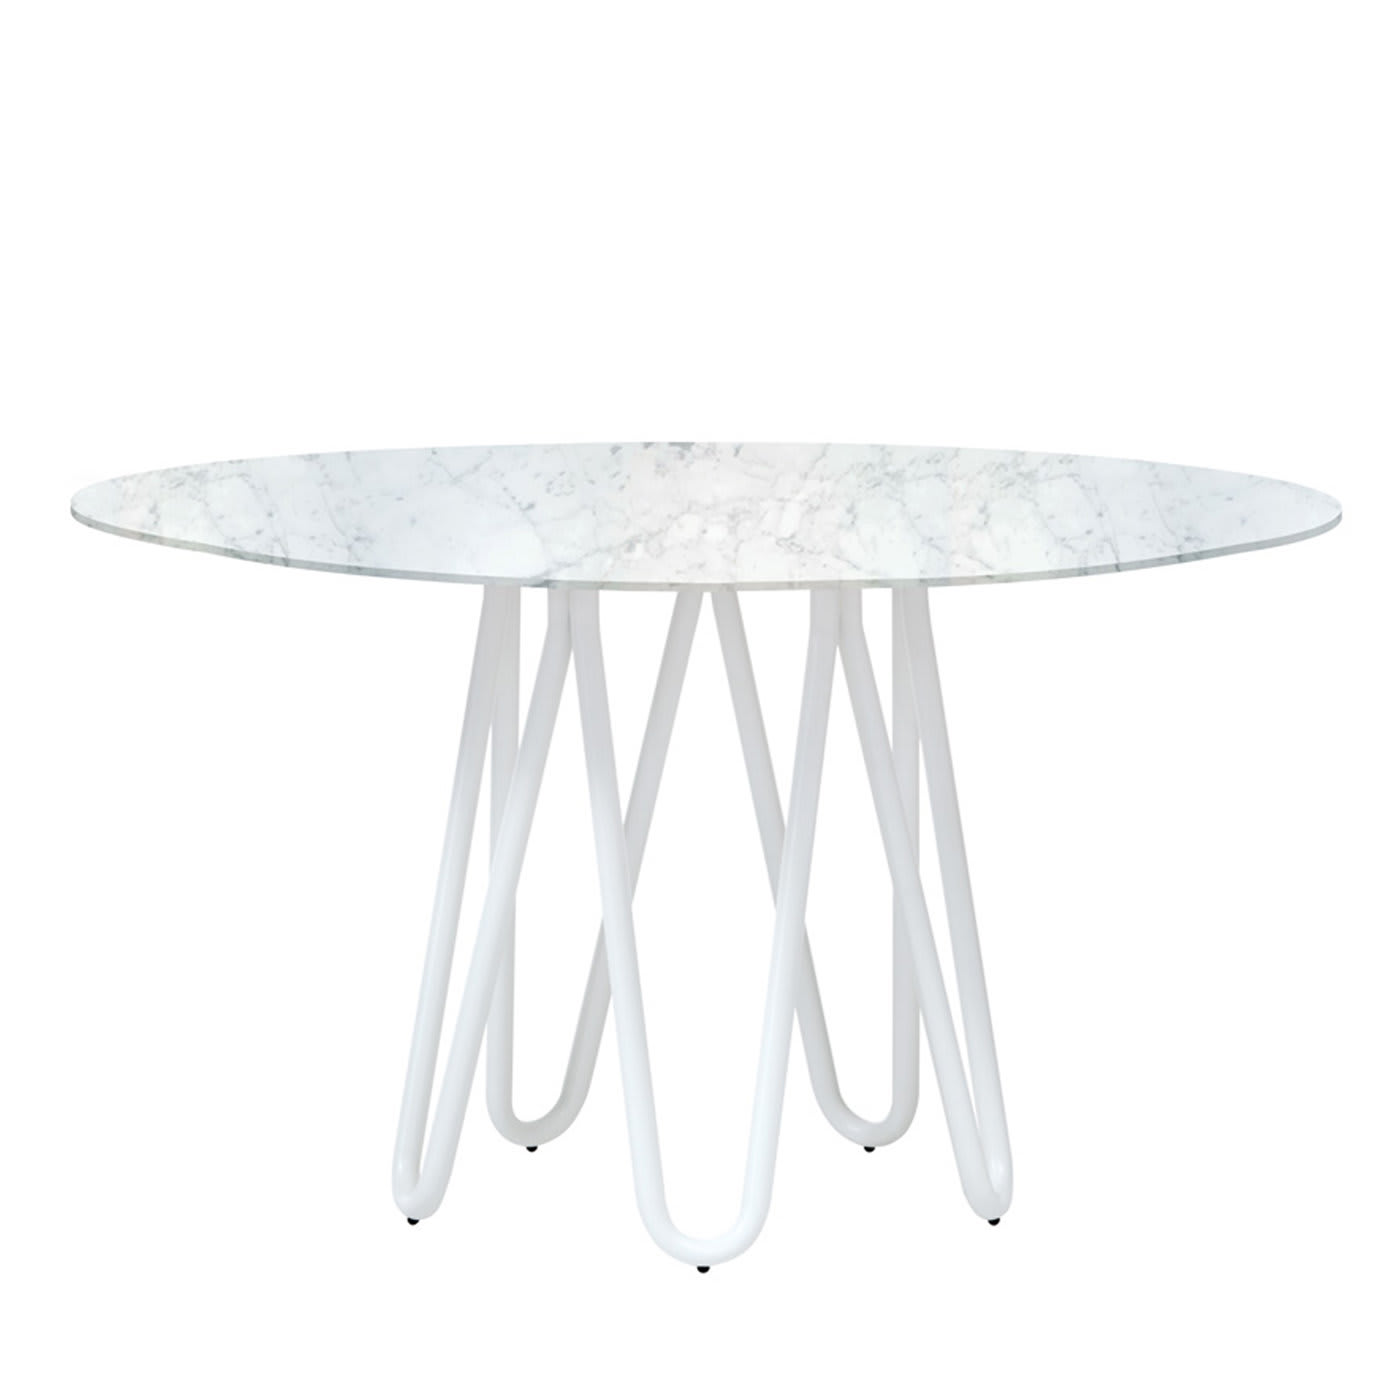 Meduse Dining Table with Carrara Marble Top by GamFratesi - Casamania